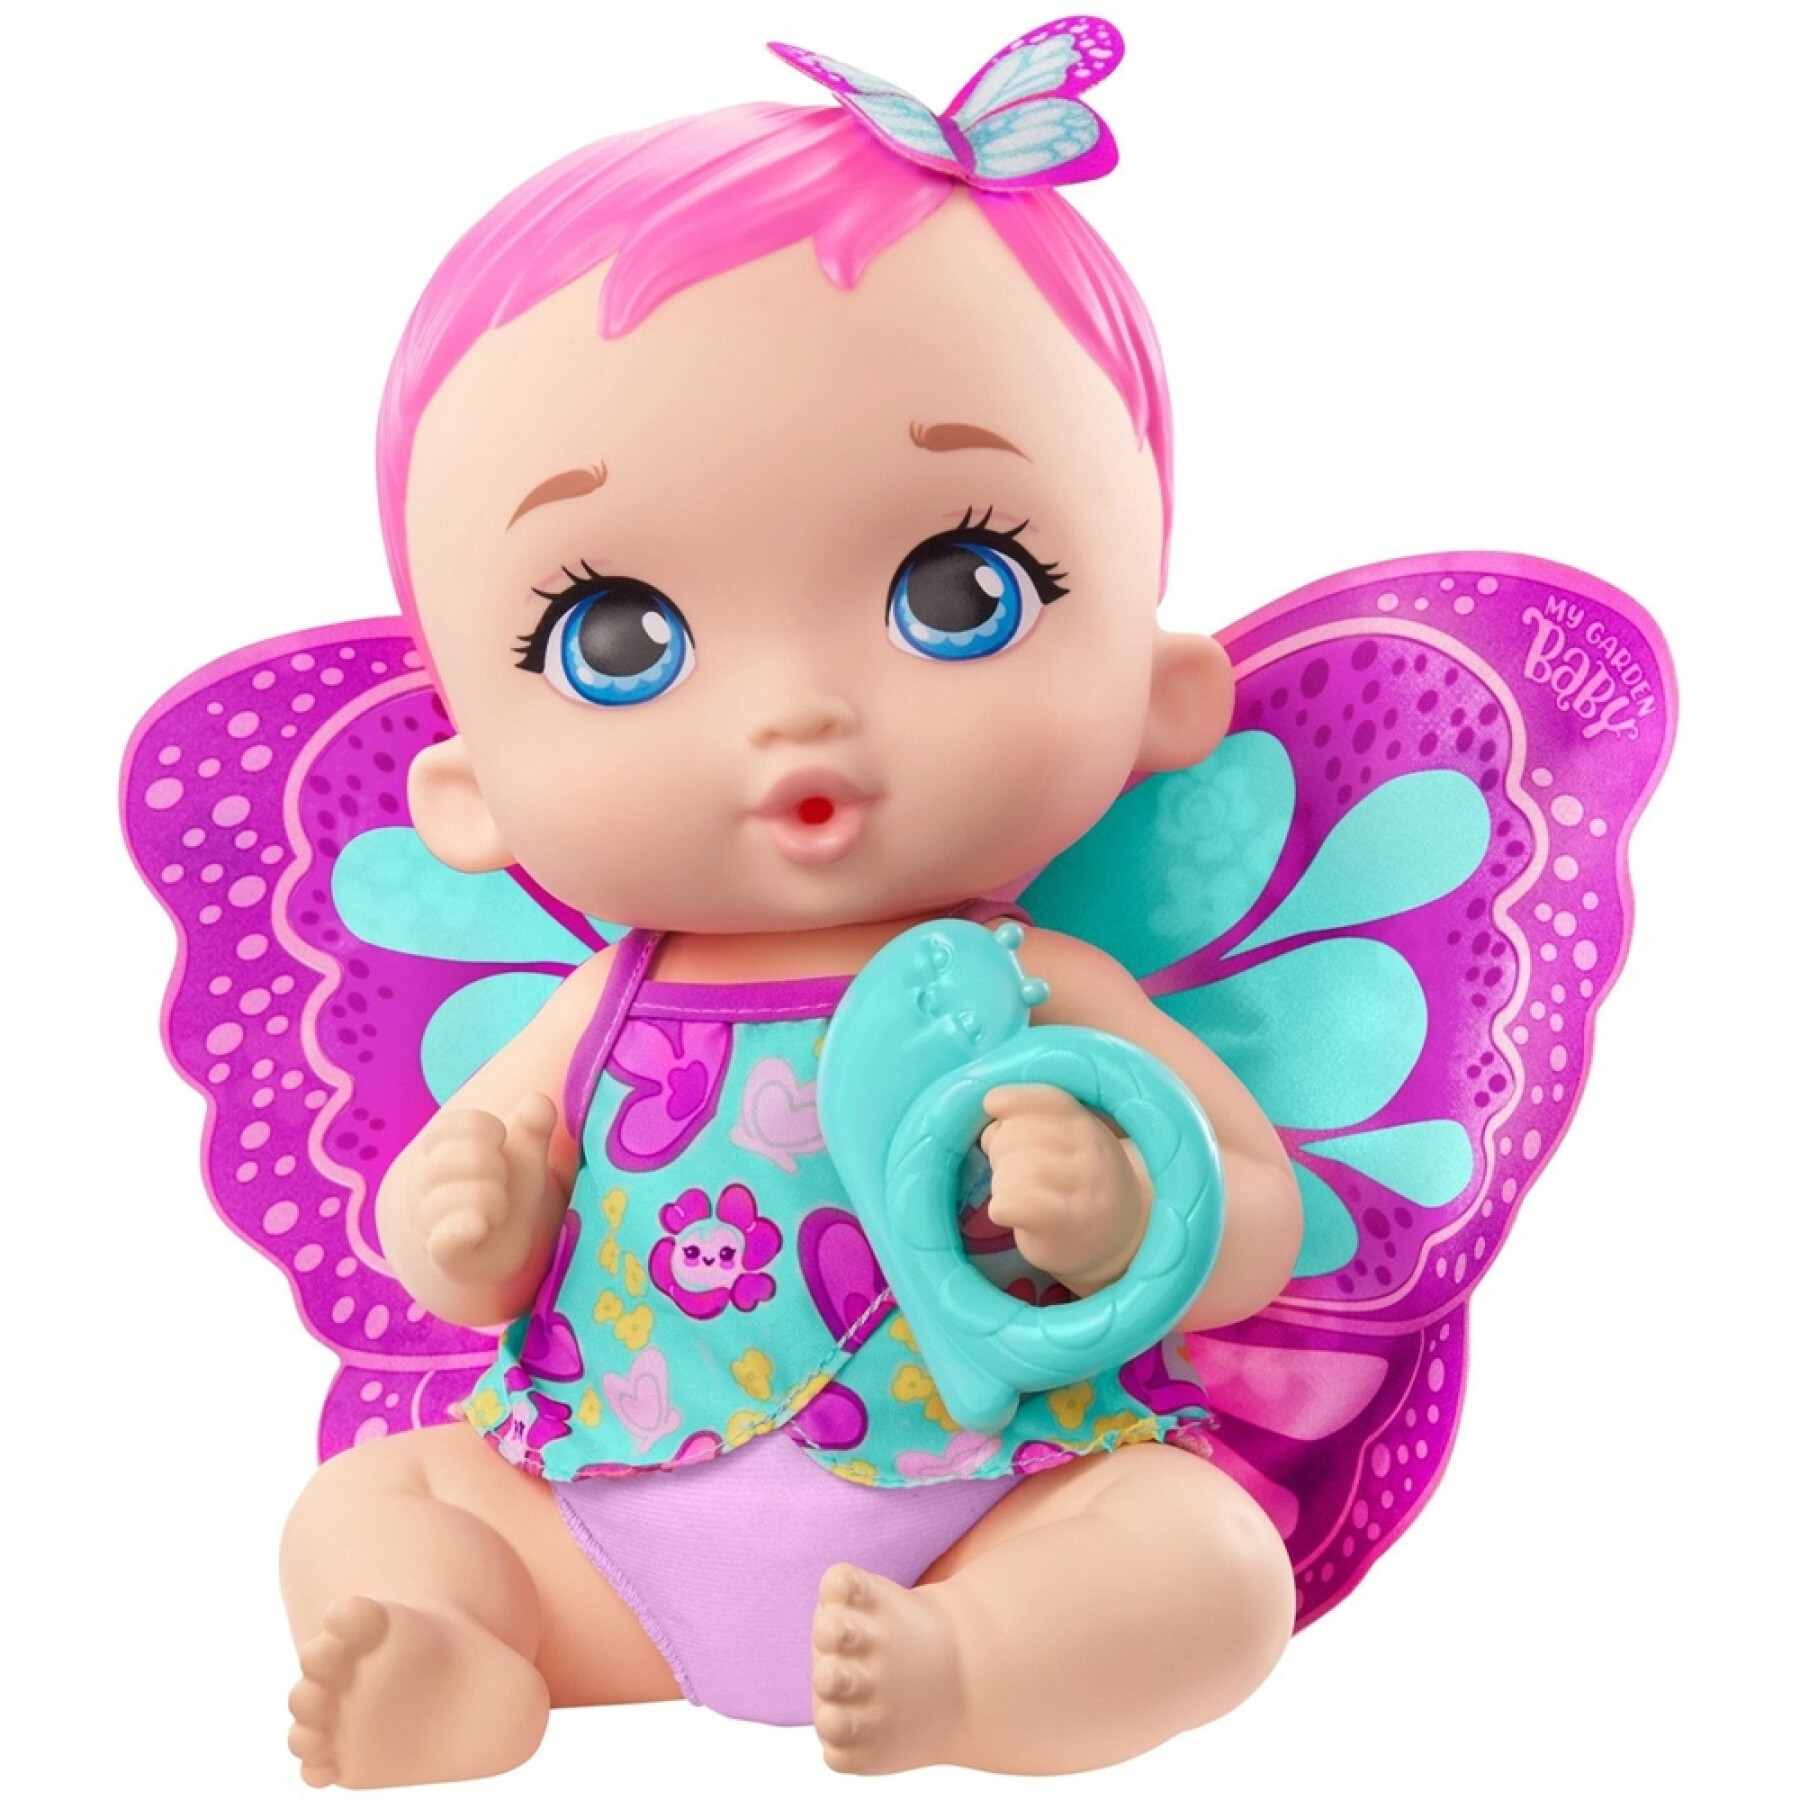 Butterfly baby doll drinks peepee Mattel France